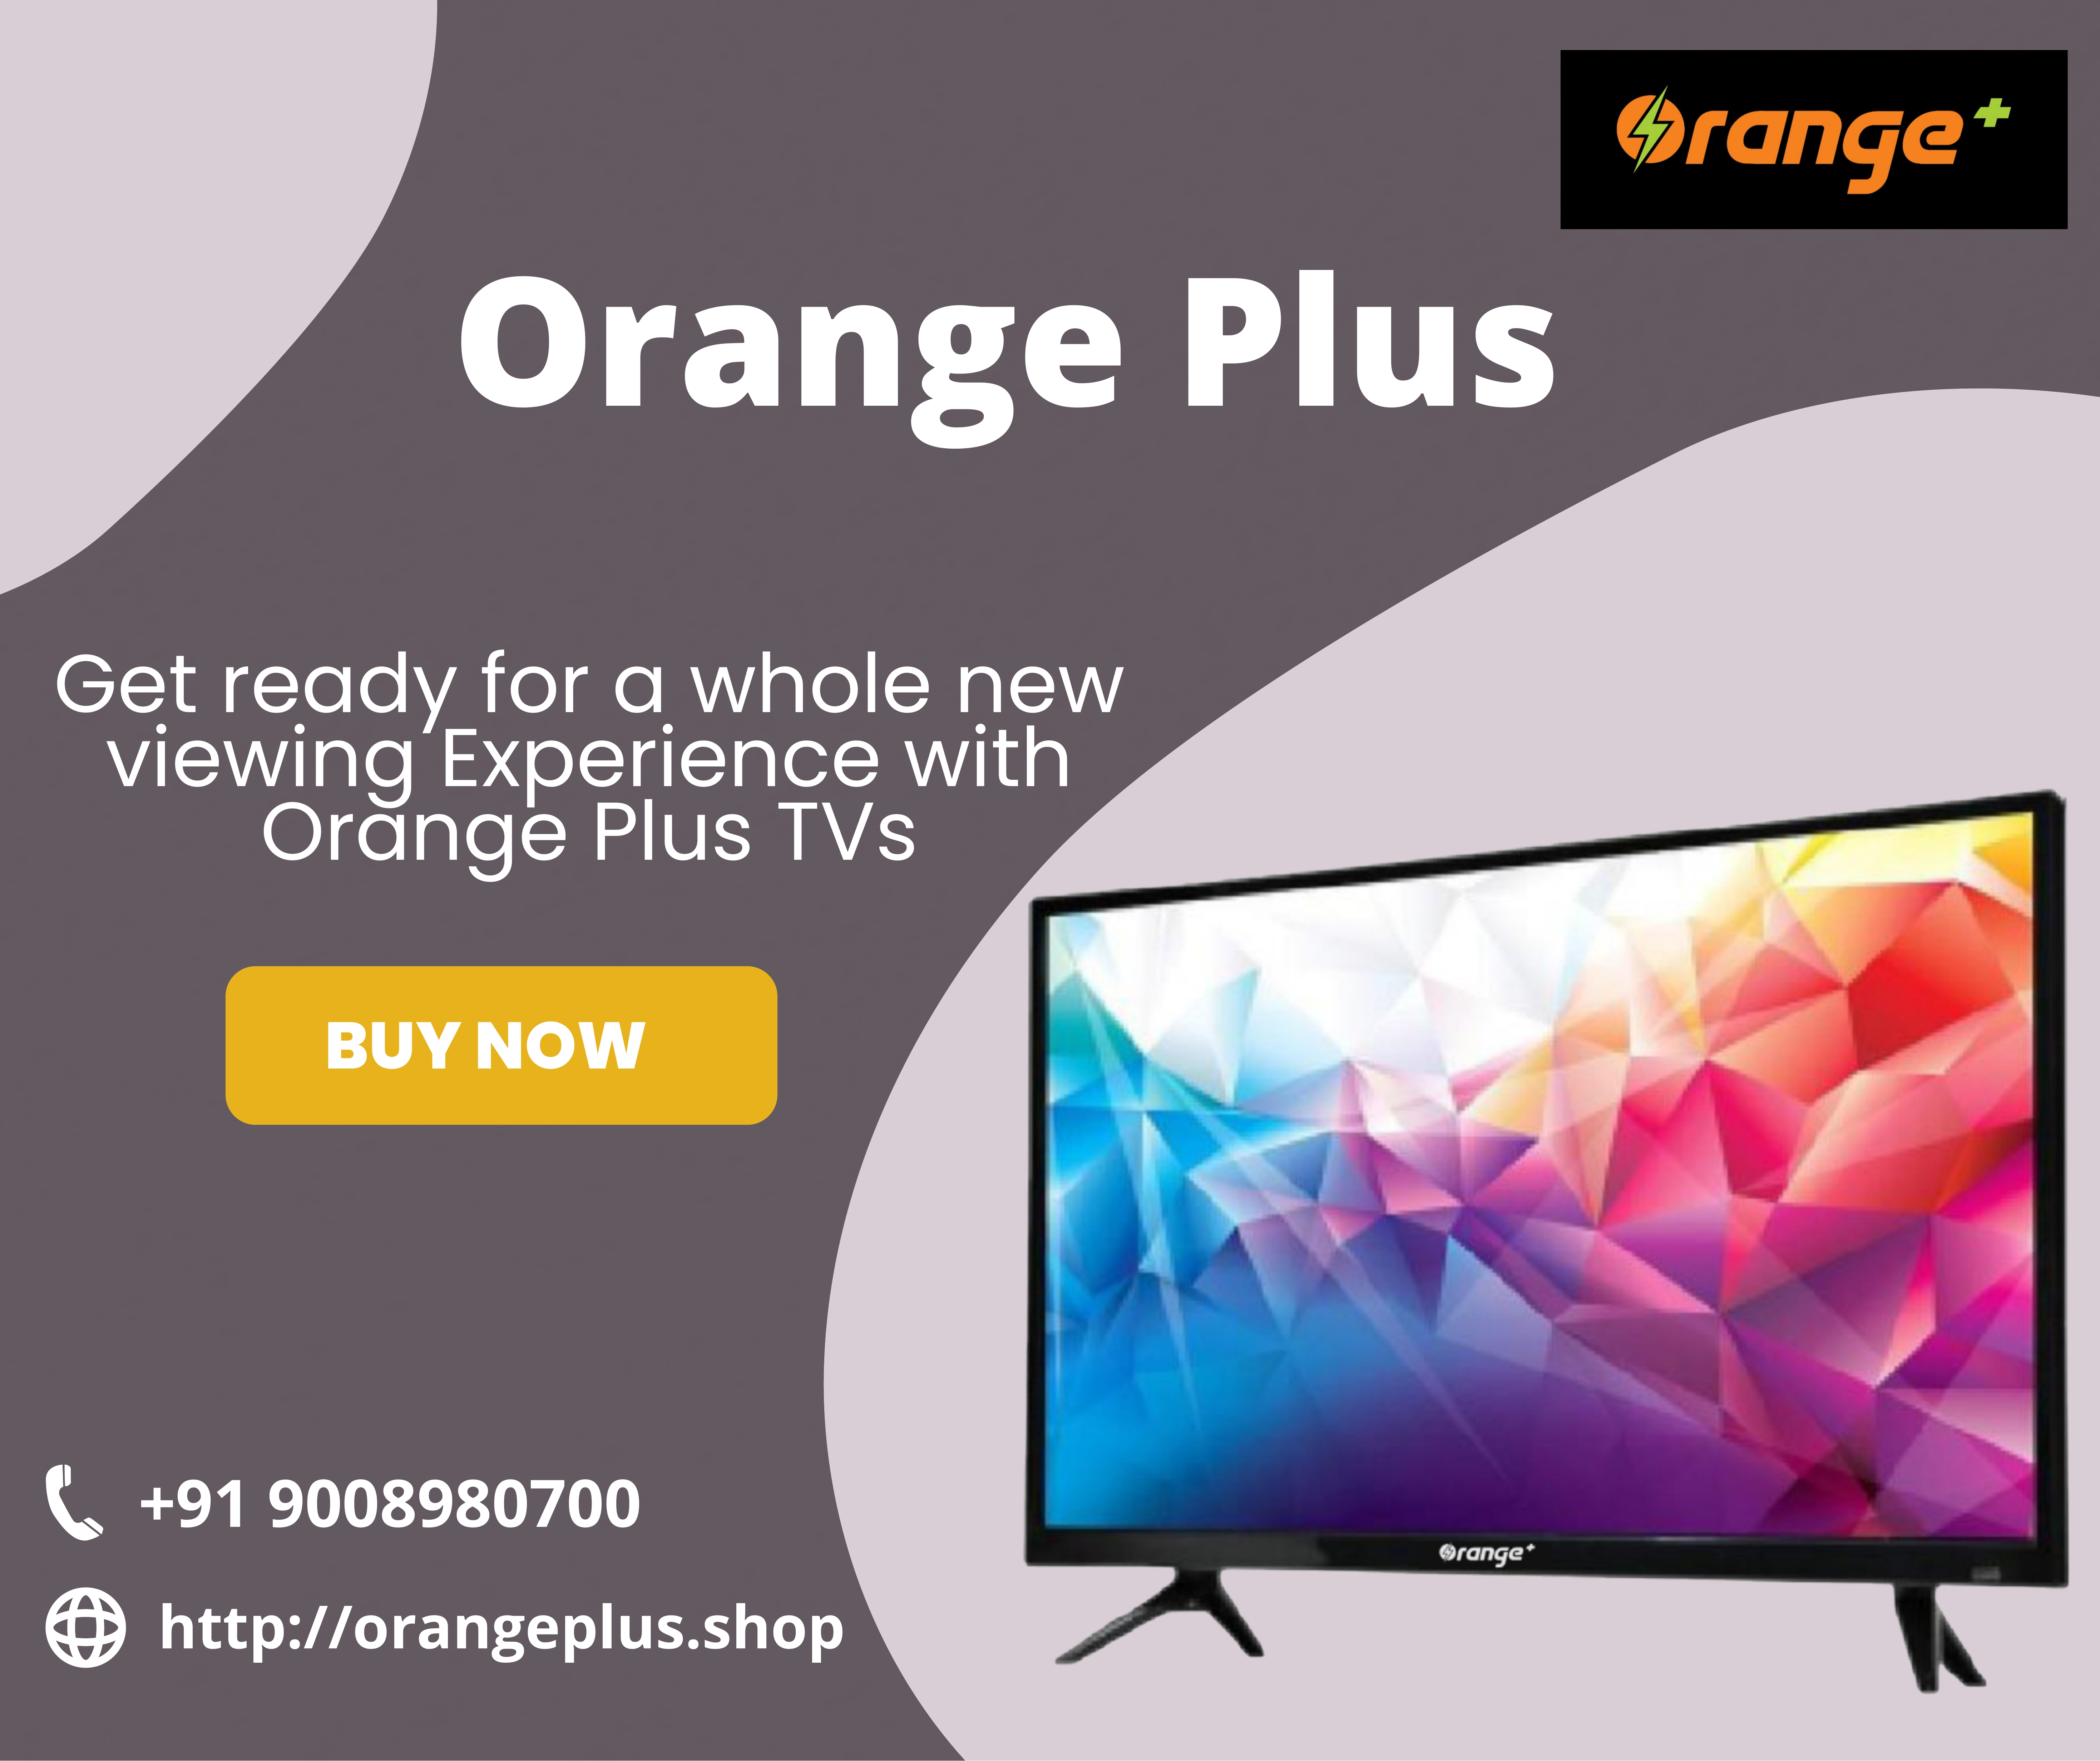 Orange Plus Special Offers on TVs at Orange Plus